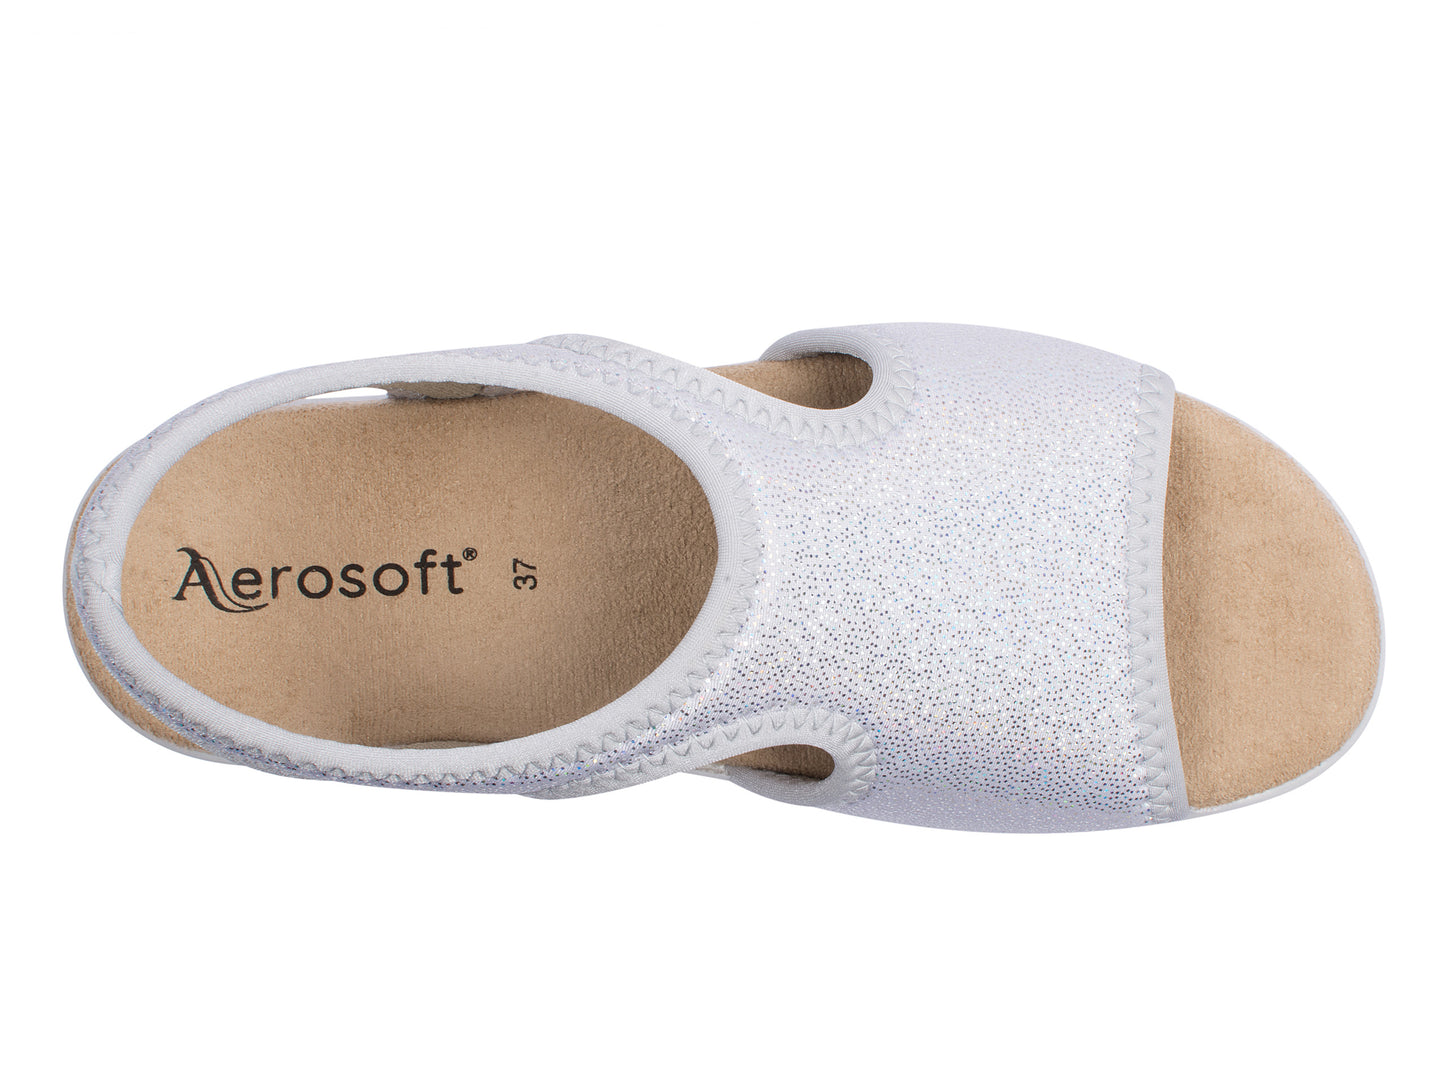 Damen Stretch Sandalette Modell Stretch 05 von Aerosoft in Farbe silber von oben